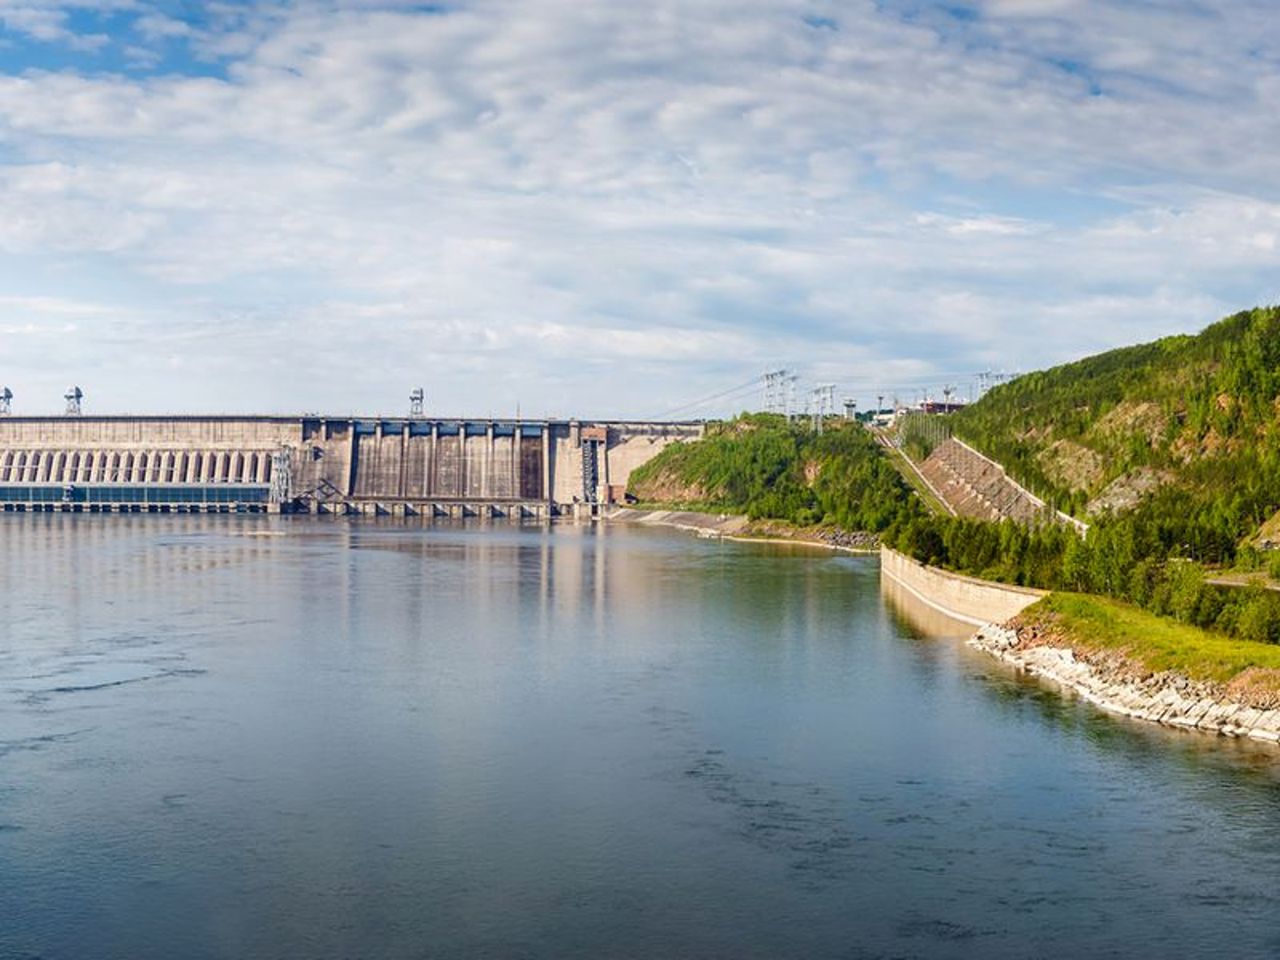 Групповая экскурсия на Красноярскую ГЭС | Цена 2500₽, отзывы, описание экскурсии